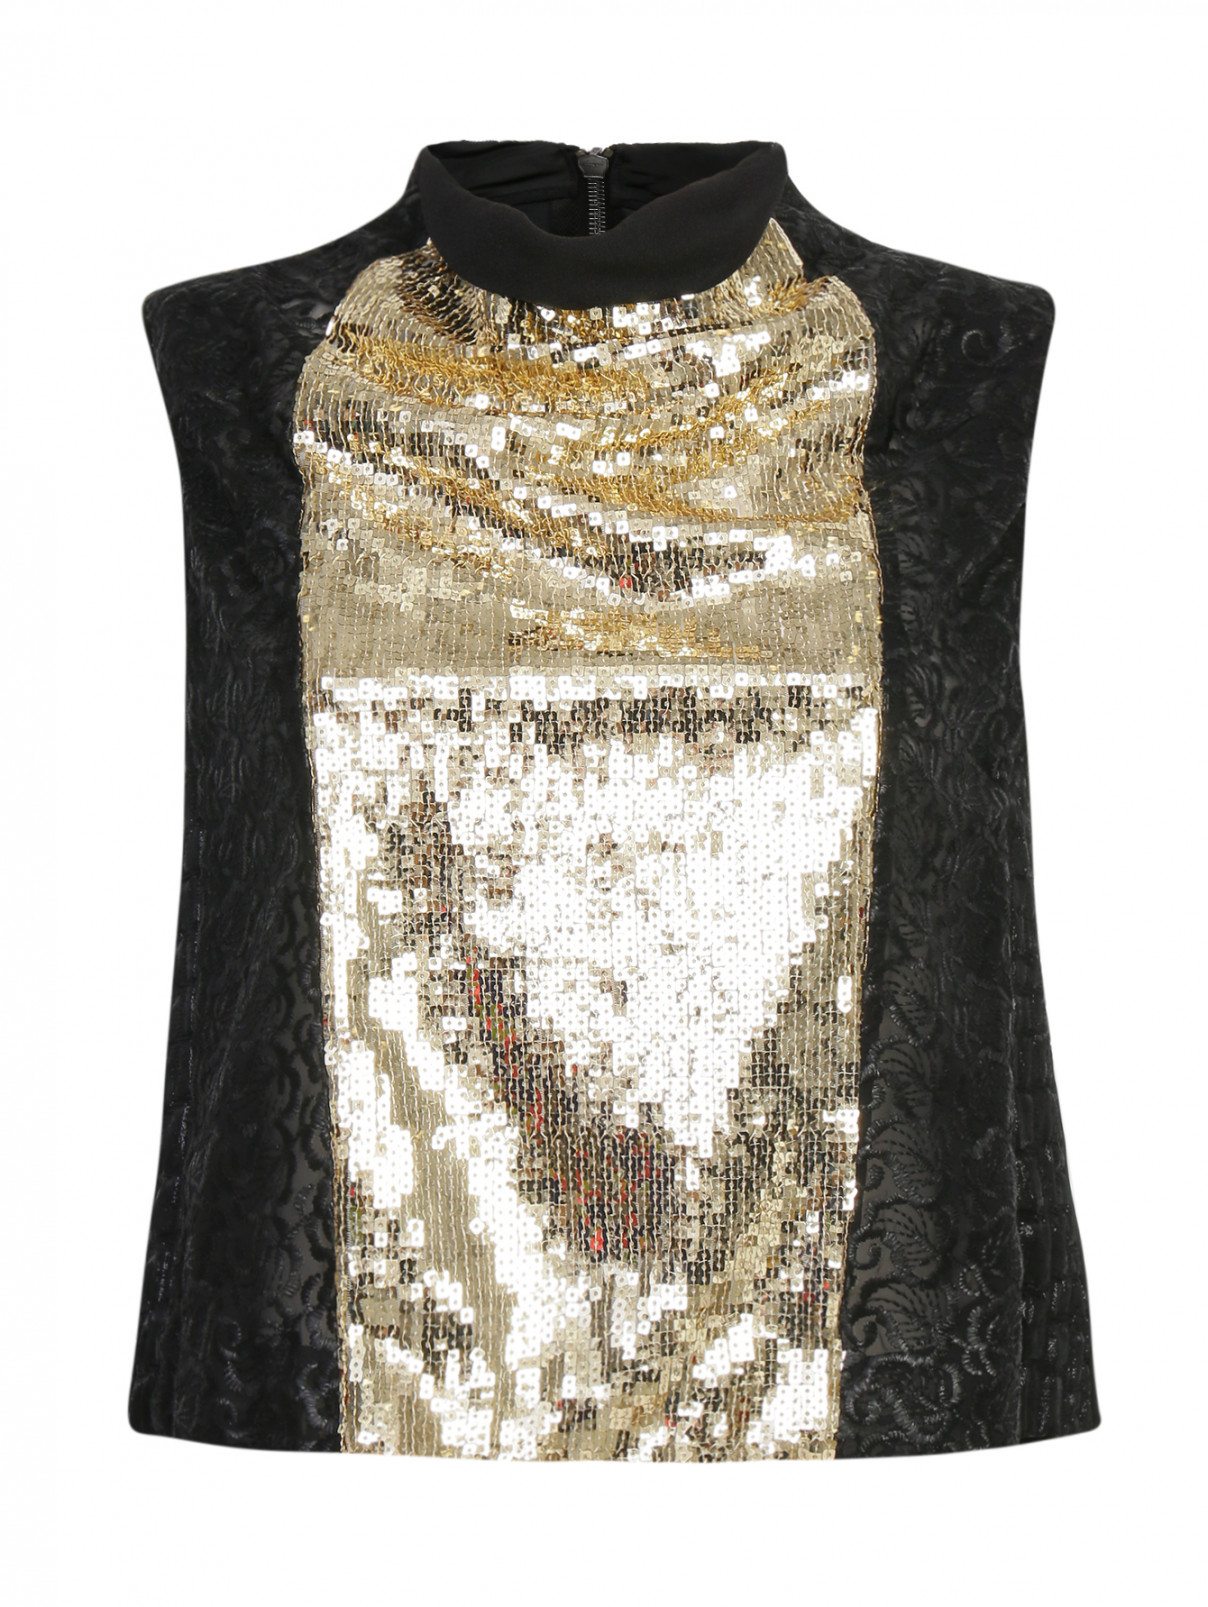 Укороченная блуза расшитая пайетками Antonio Marras  –  Общий вид  – Цвет:  Черный